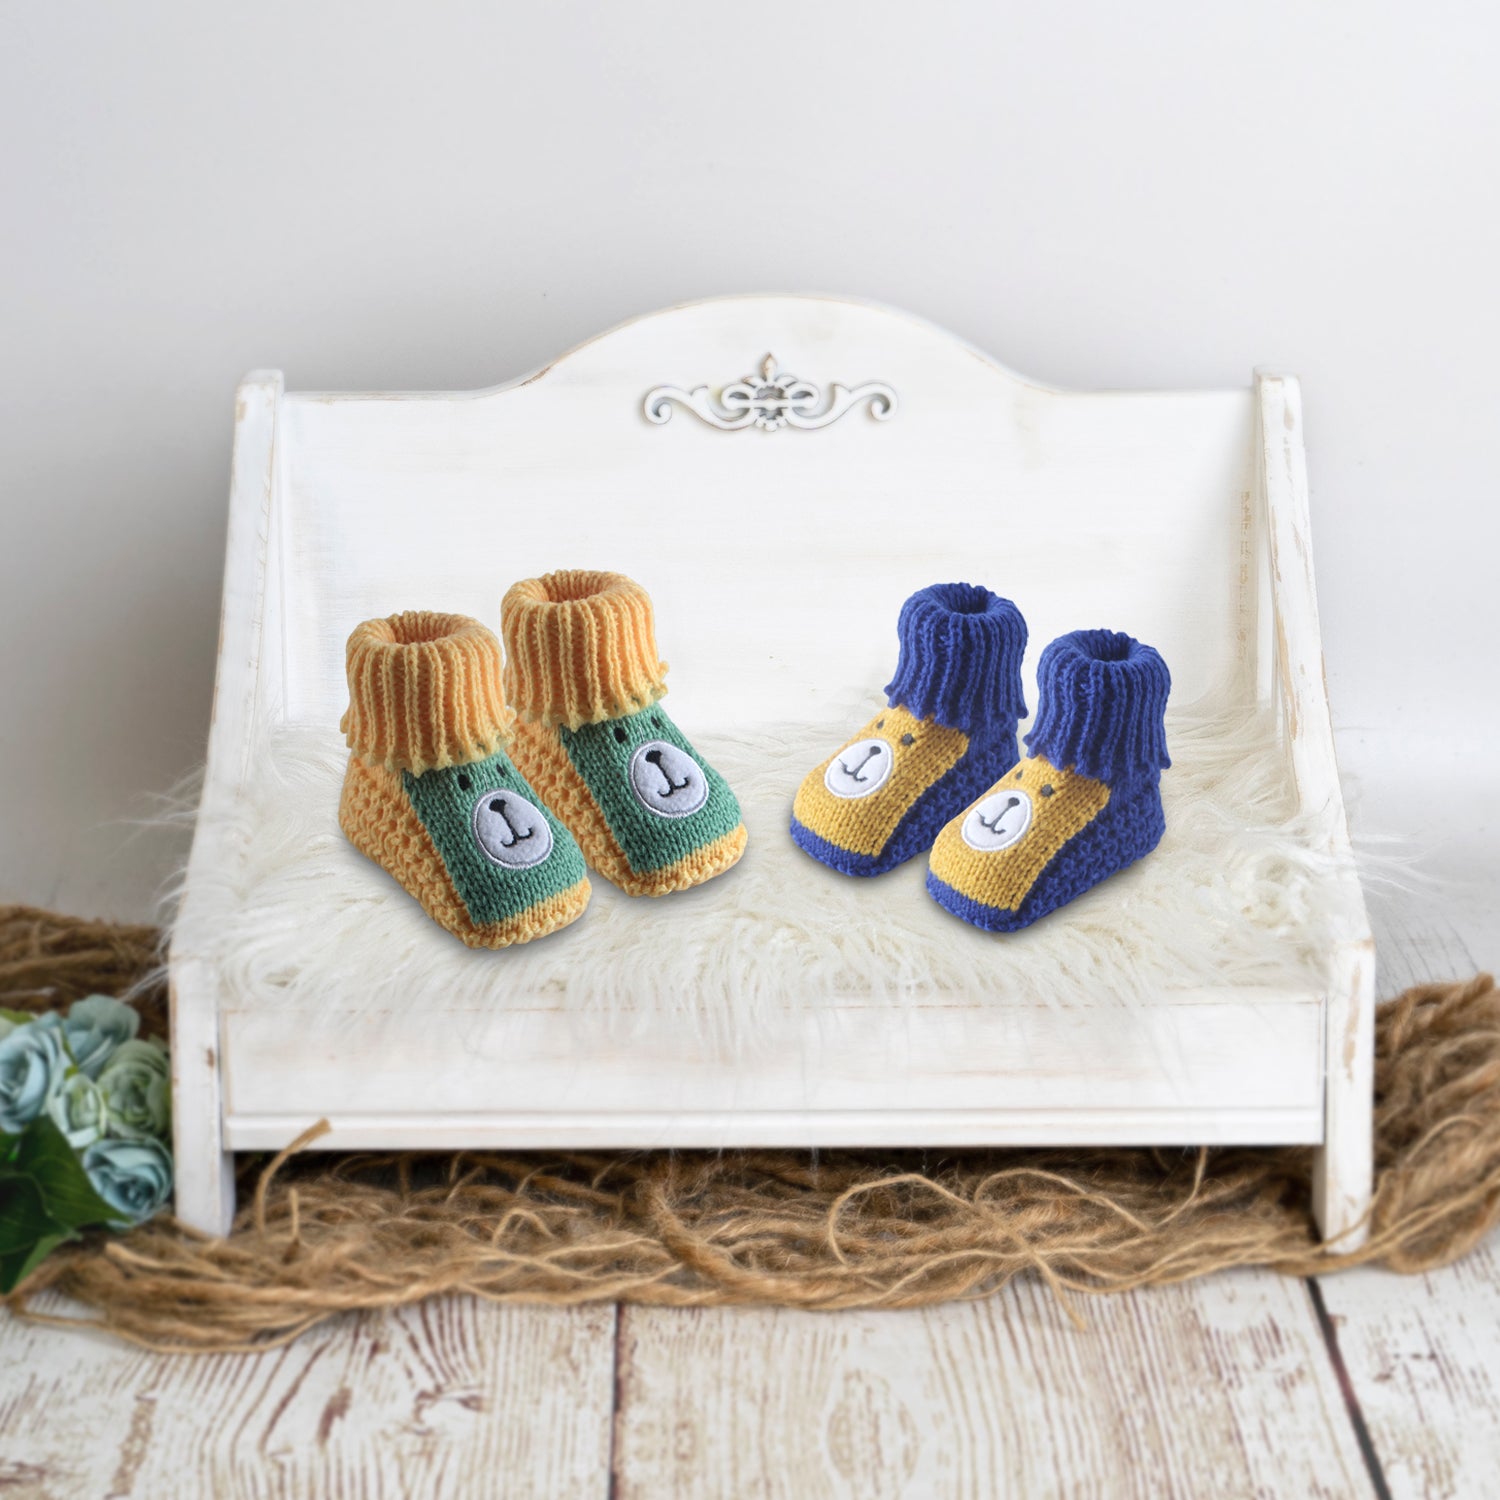 Newborn Crochet Woollen Booties Teddy - Yellow, Blue - Baby Moo